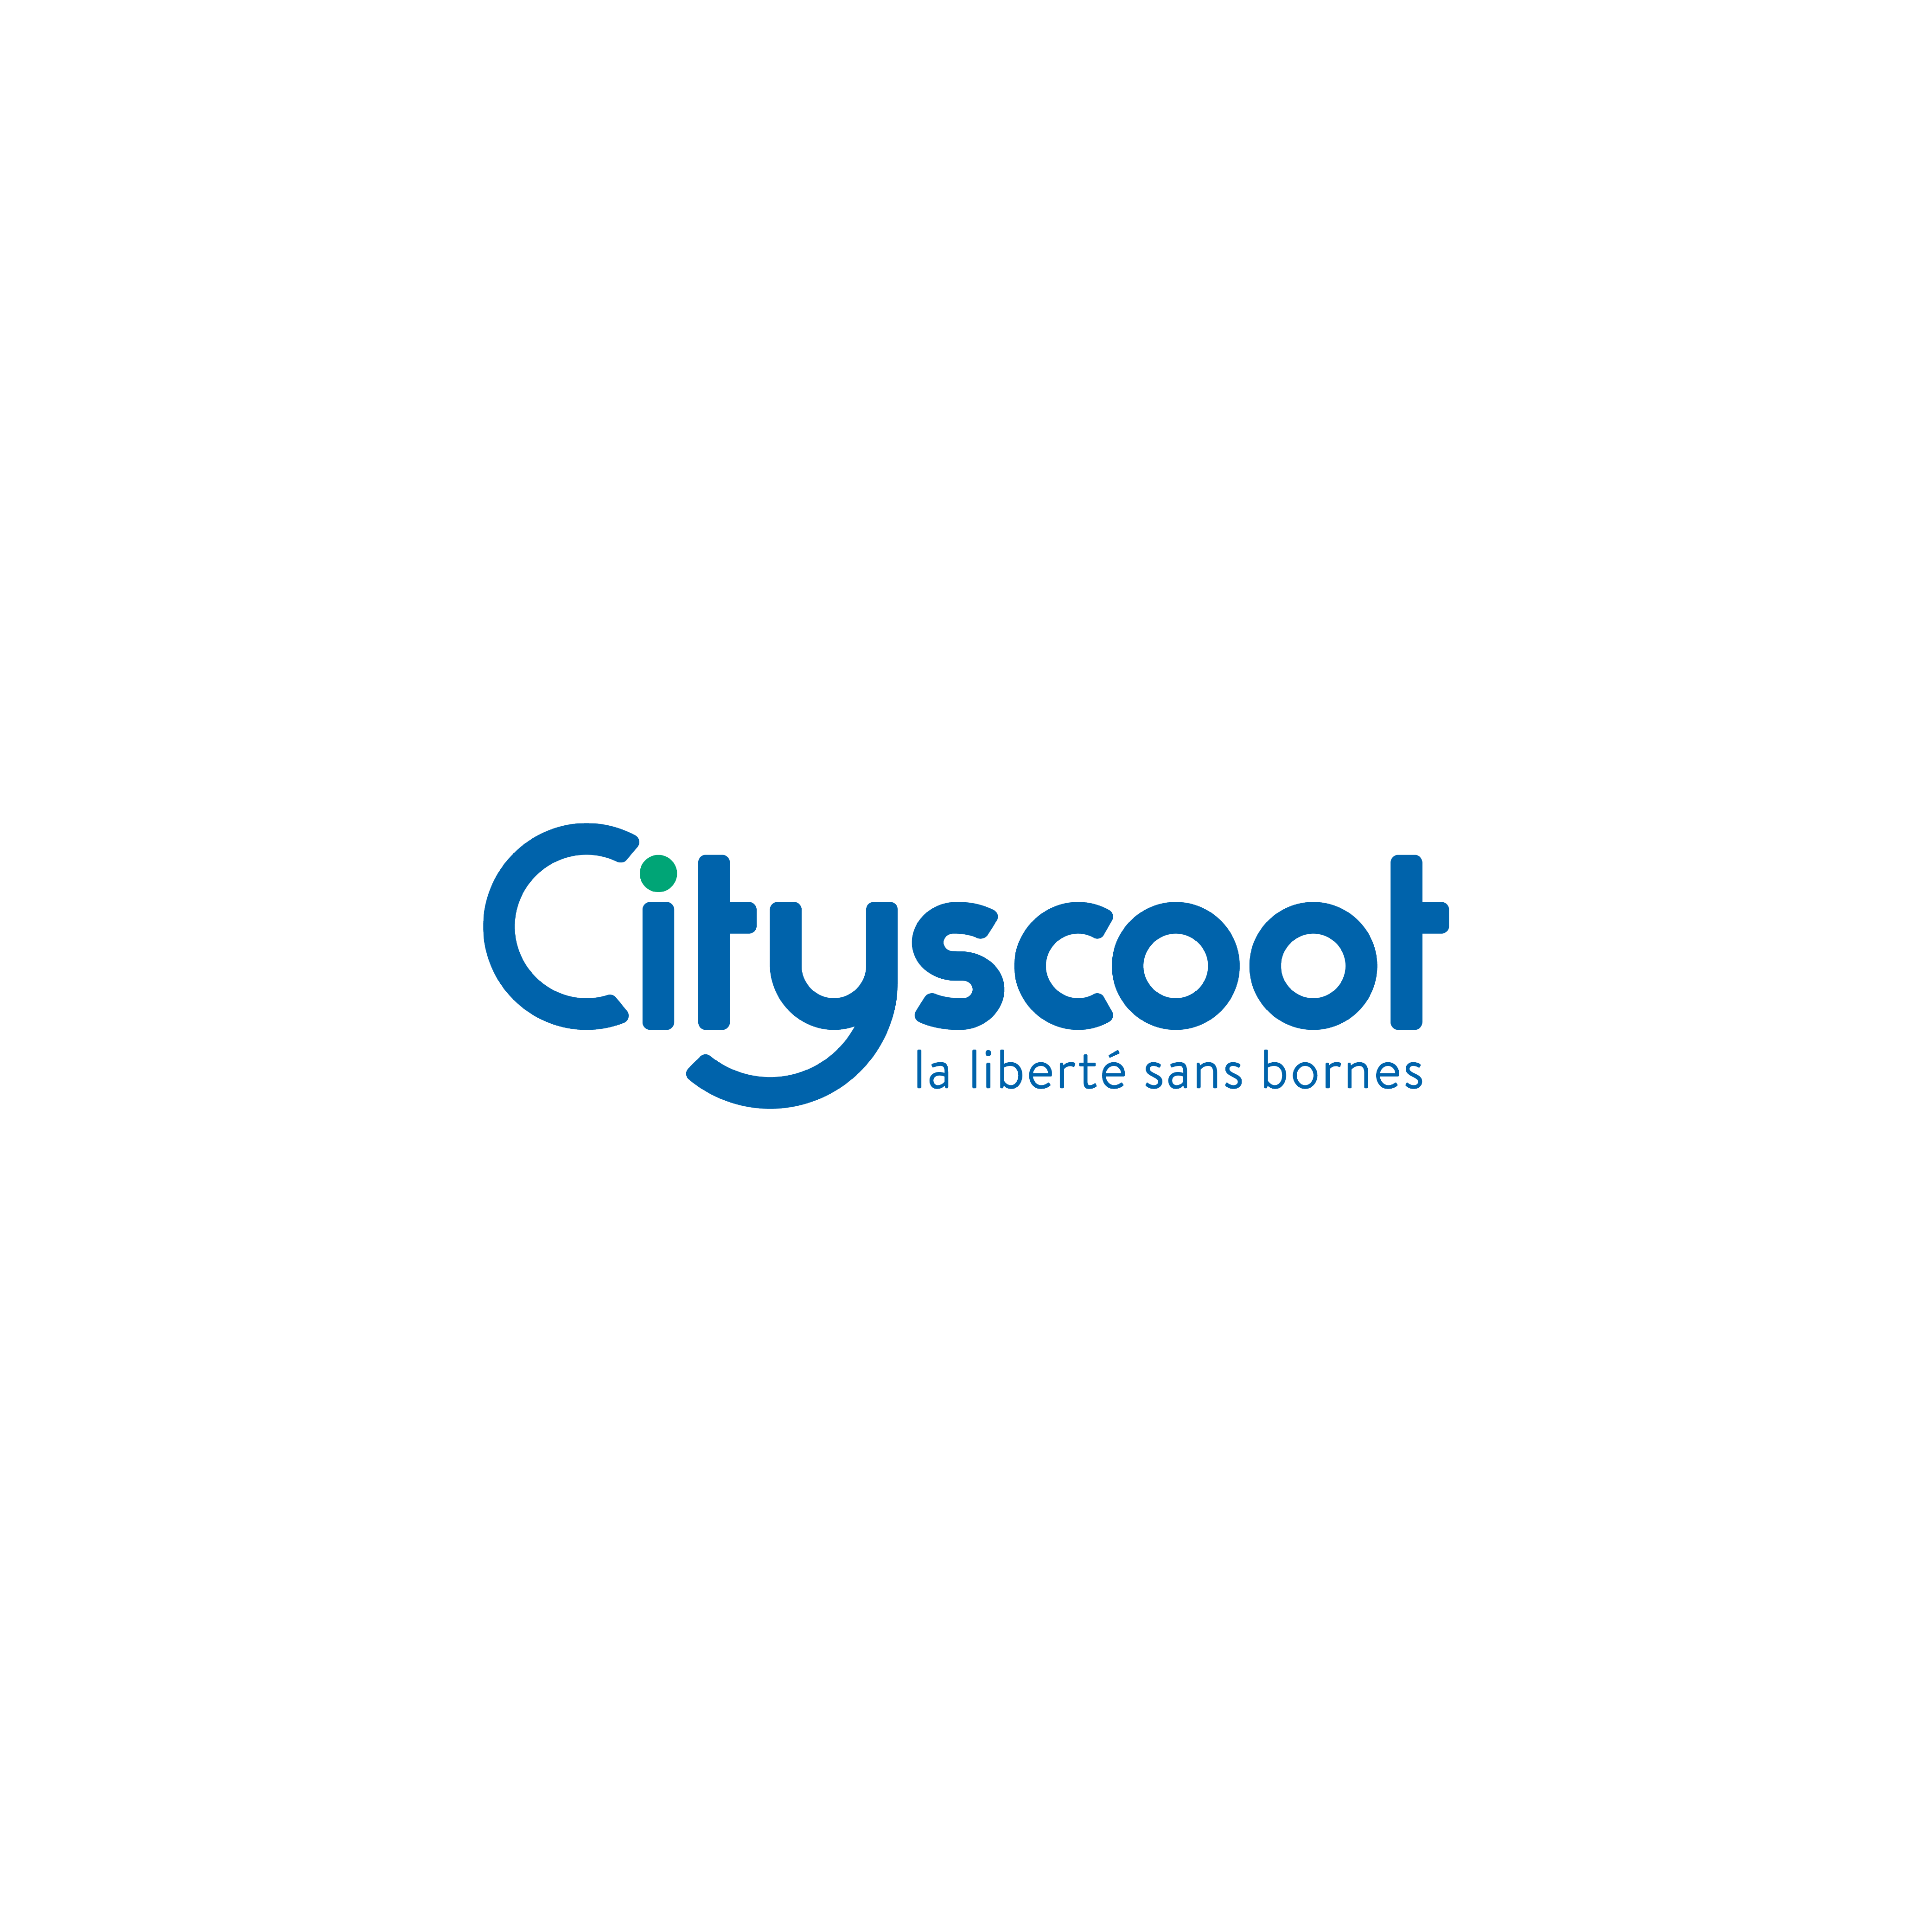 Logo_Cityscoot_Sponsors-01